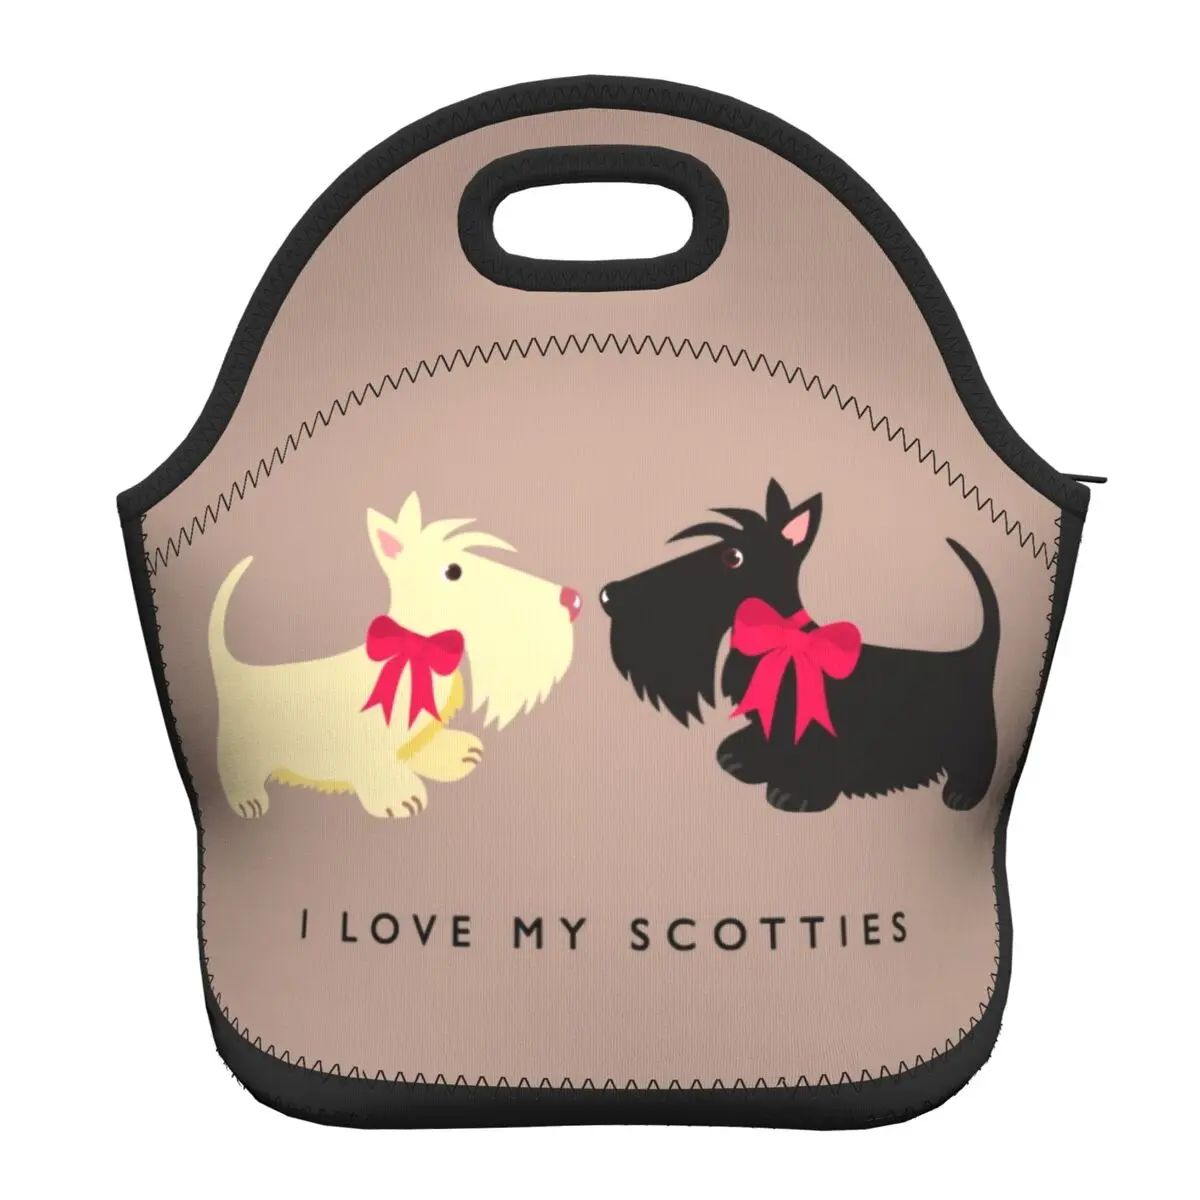 Уэст-Хайленд-Уайт-терьер и Скотти Изолированная сумка для ланча, Женская сумка для собак с шотландским терьером, Термоохладитель, Неопреновый Ланч-бокс для еды - 5